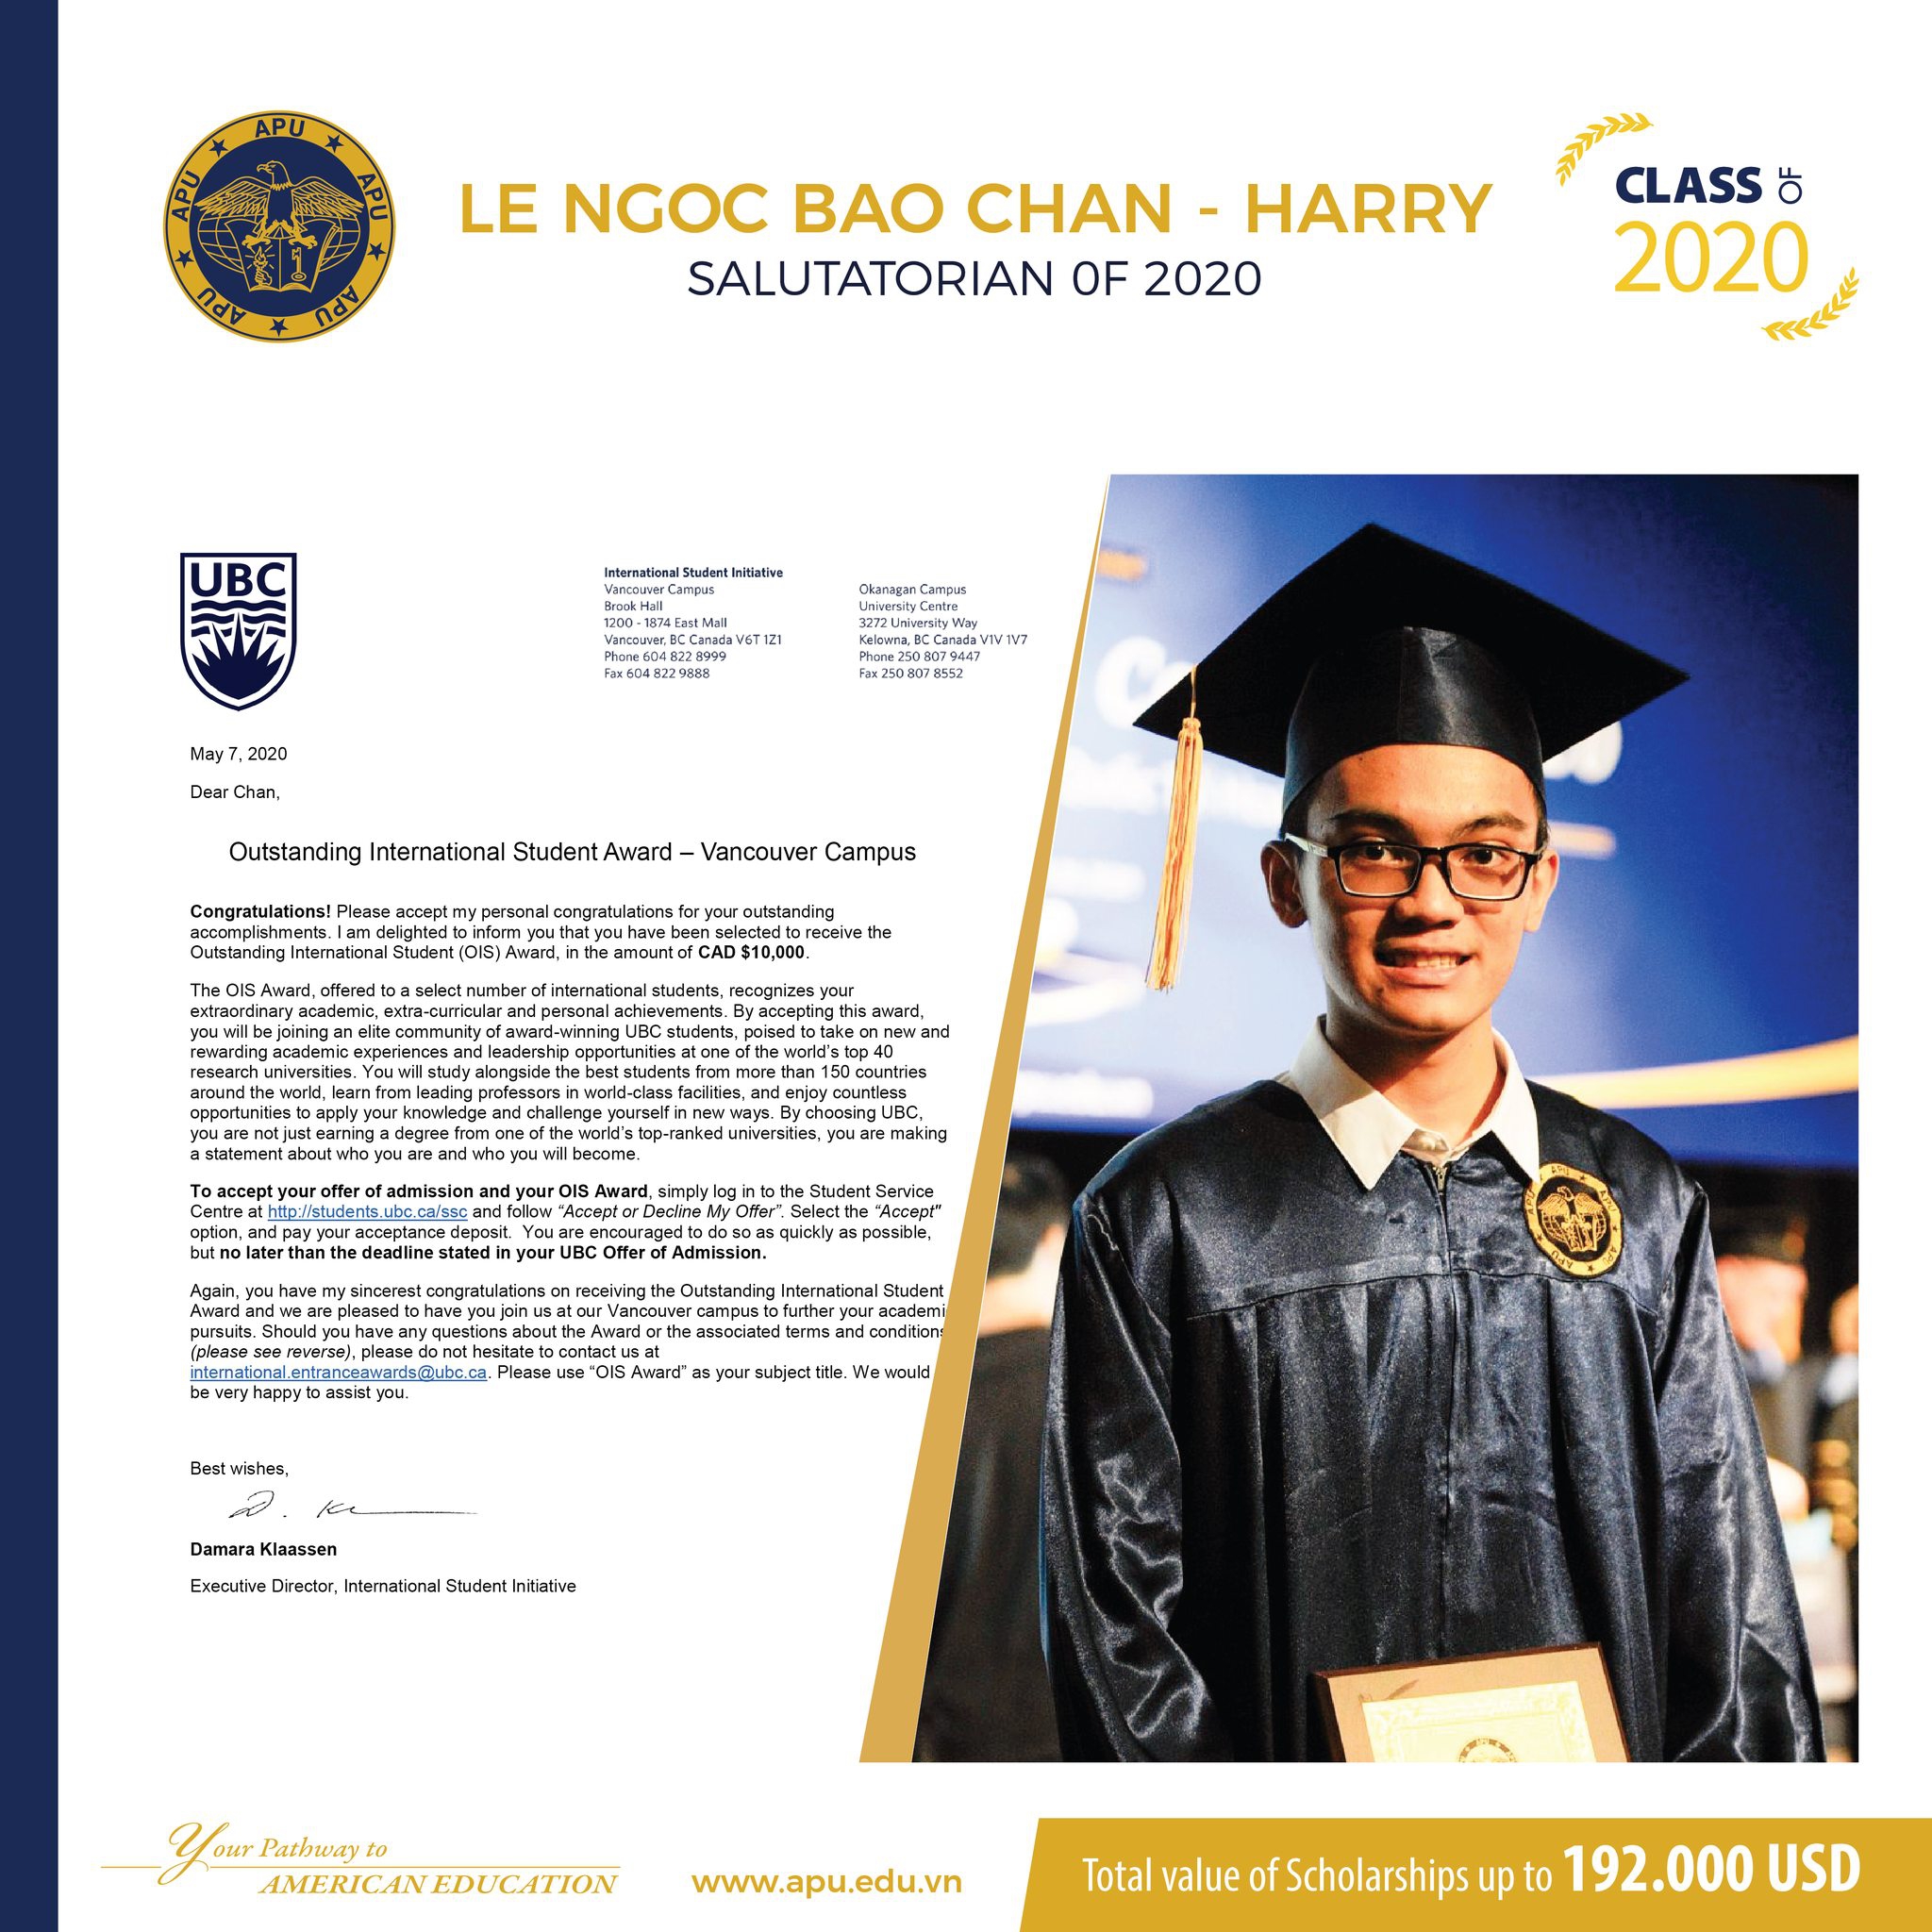 HARRY BAO CHAN APU ALUMNI OF CLASS OF 2020